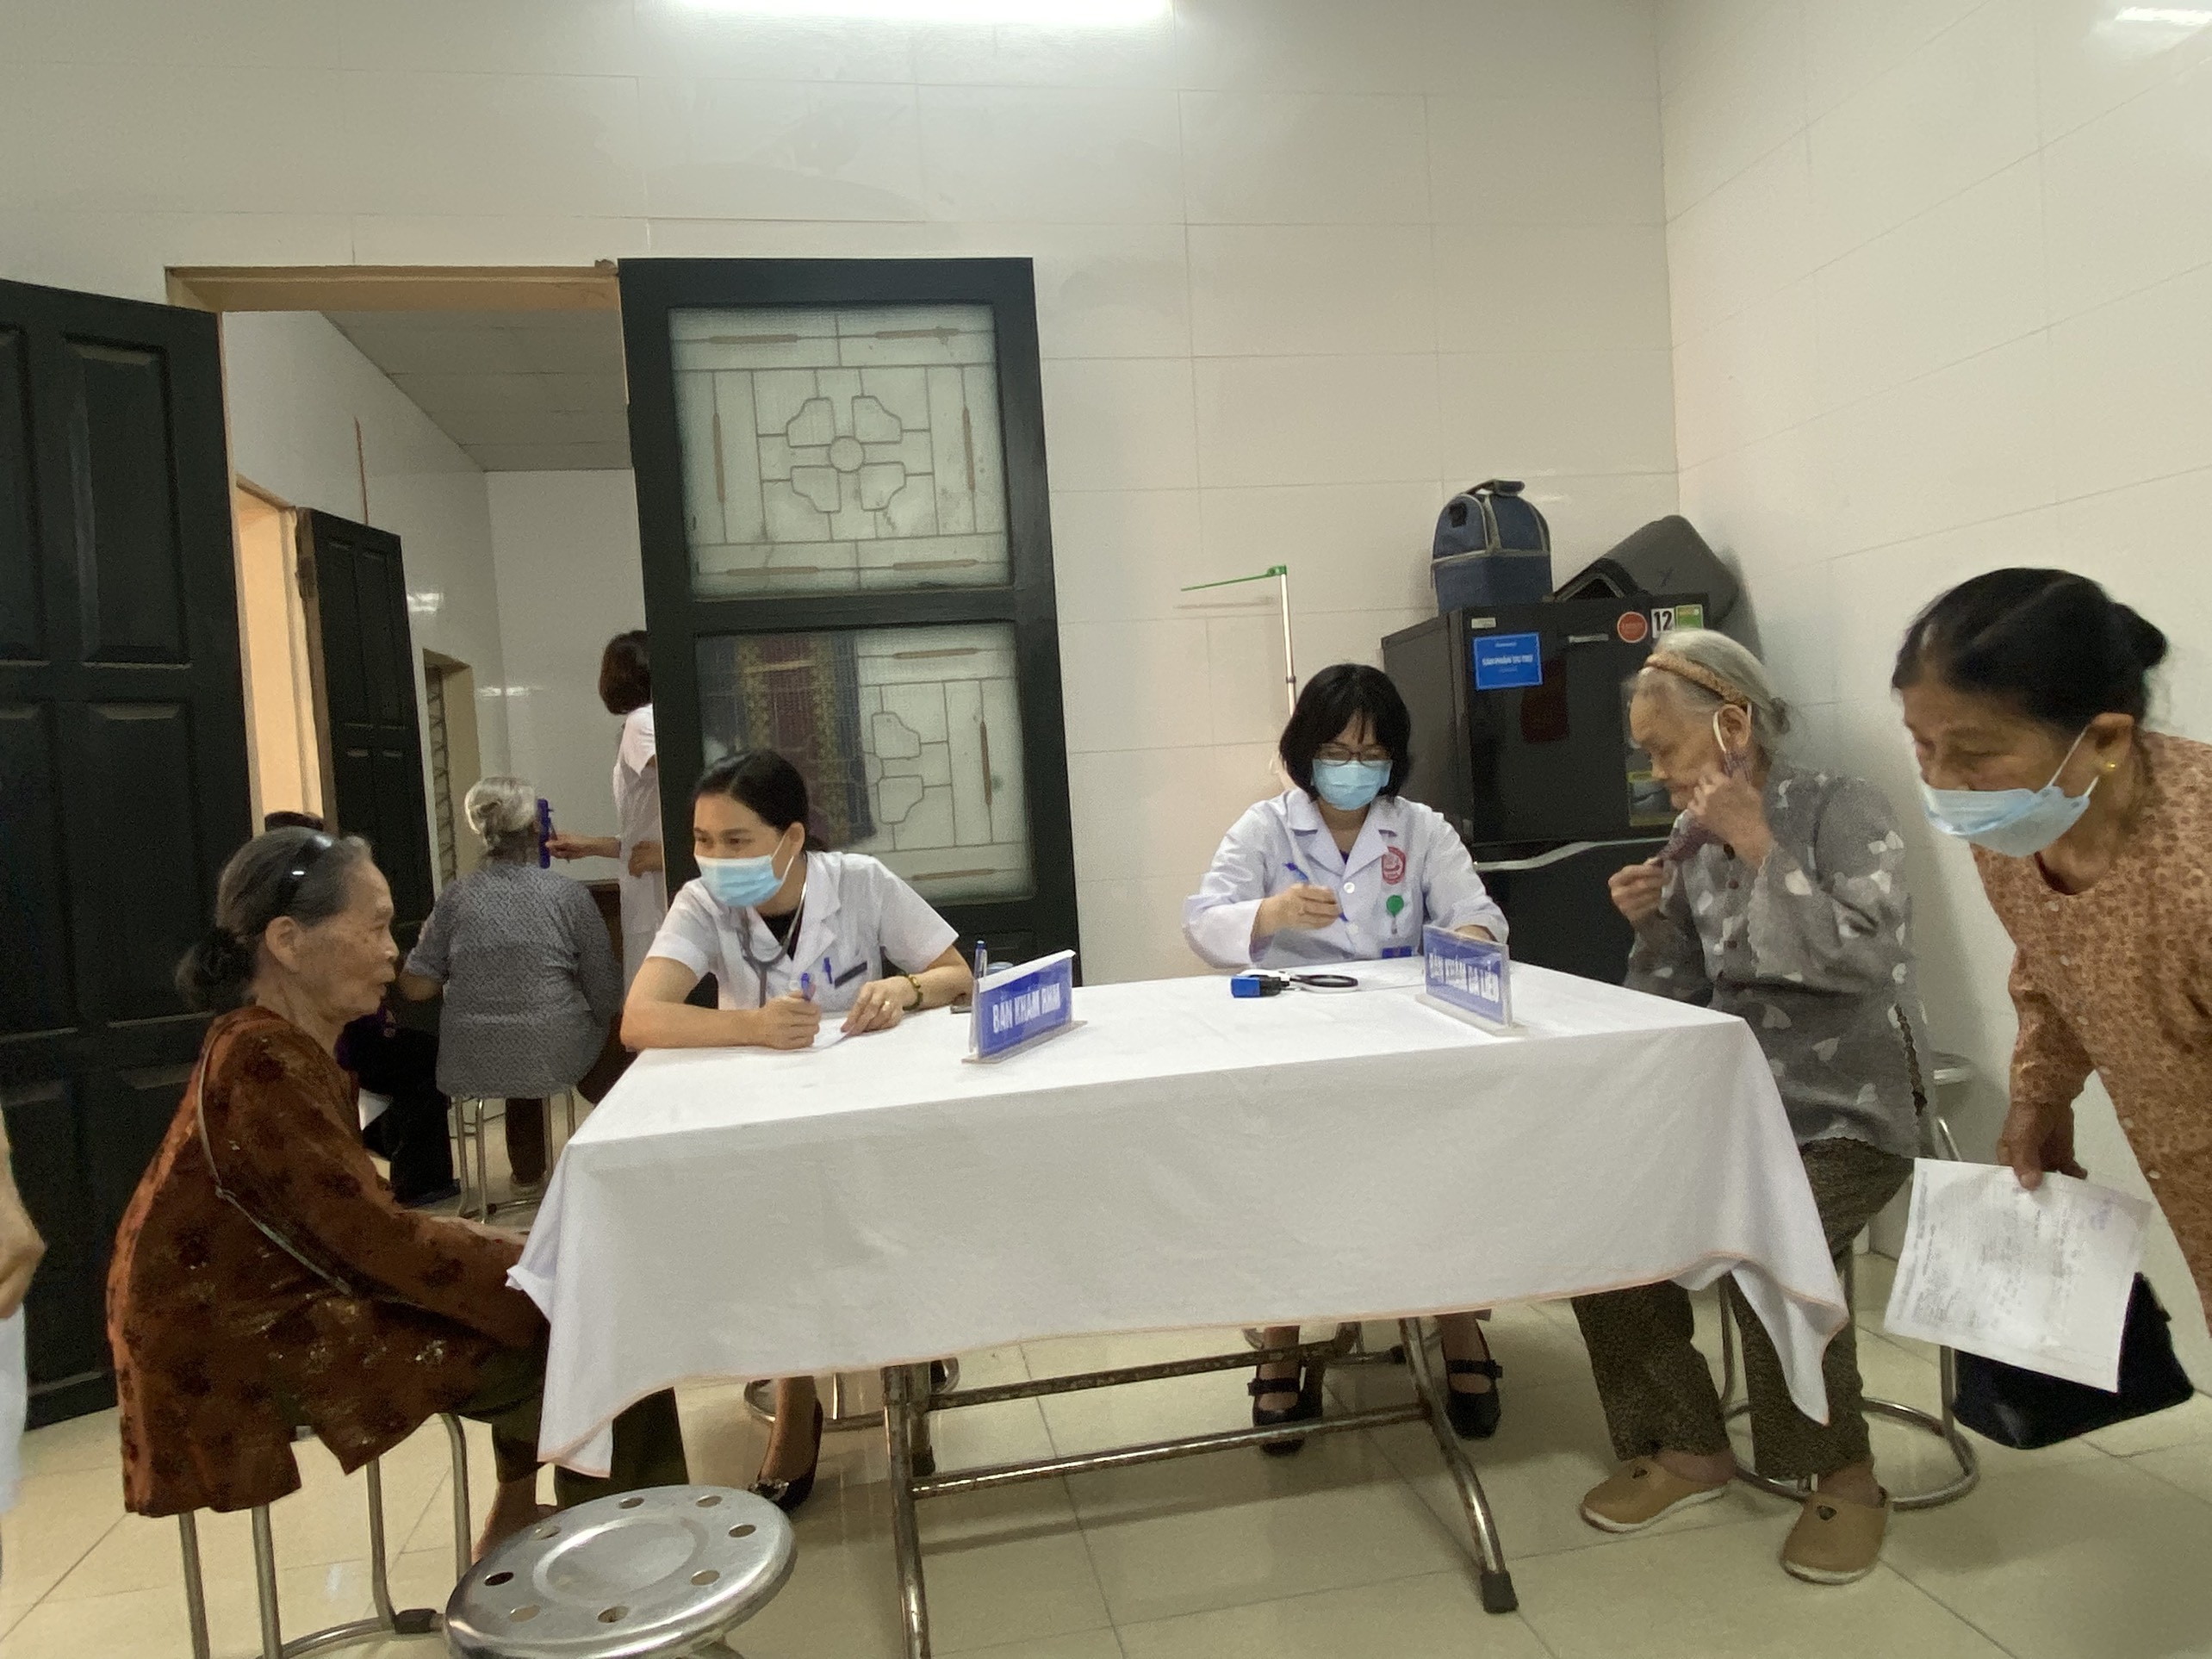 Trung tâm Kiểm soát bệnh tật: Khám bệnh miễn phí cho bệnh nhân gia đình chính sách tại phường Thọ...|https://kiemsoatbenhtatbacgiang.vn/zh_CN/chi-tiet-tin-tuc/-/asset_publisher/M0UUAFstbTMq/content/trung-tam-kiem-soat-benh-tat-kham-benh-mien-phi-cho-benh-nhan-gia-inh-chinh-sach-tai-phuong-tho-xuong